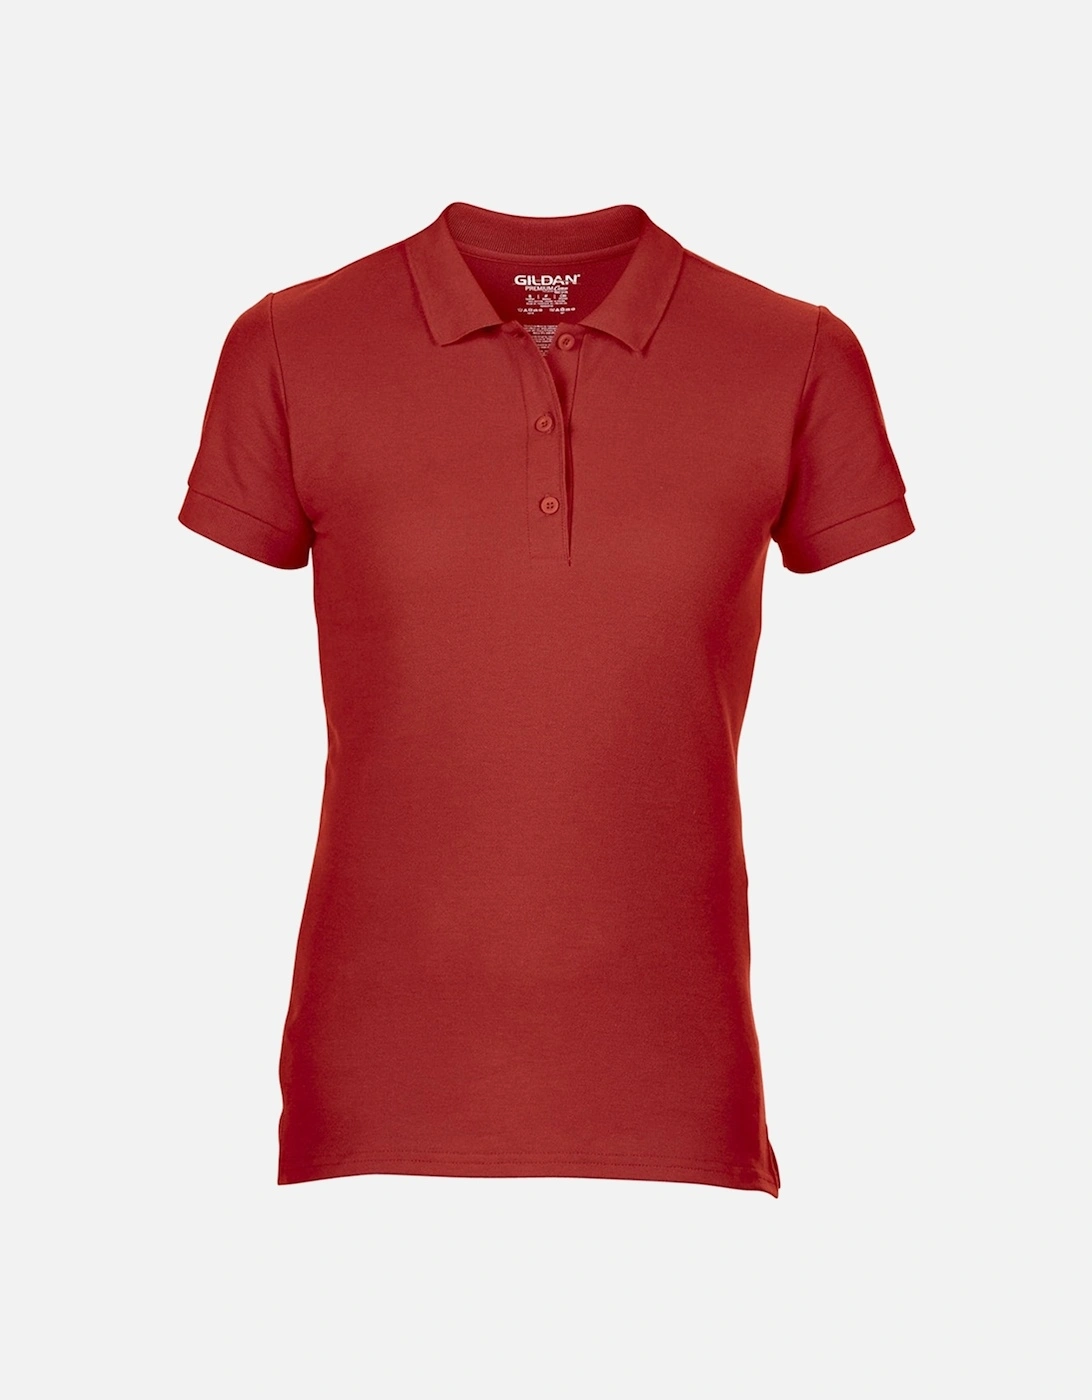 Womens/Ladies Premium Cotton Sport Double Pique Polo Shirt, 6 of 5